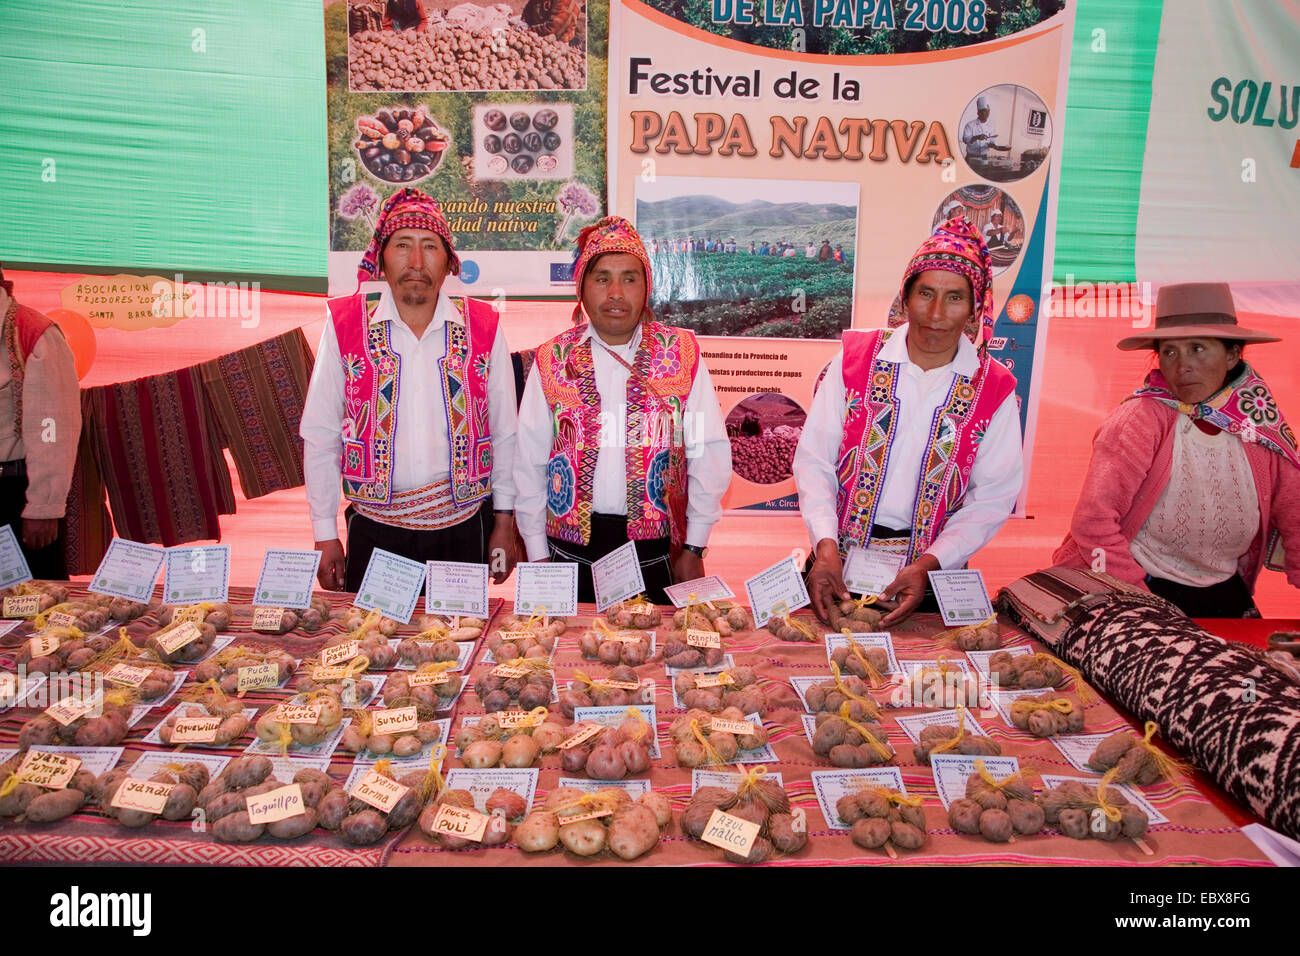 Ceremonialmente vestidos fruterías vender papas nativas en un festival tradicional, Peru, Cuzco Foto de stock